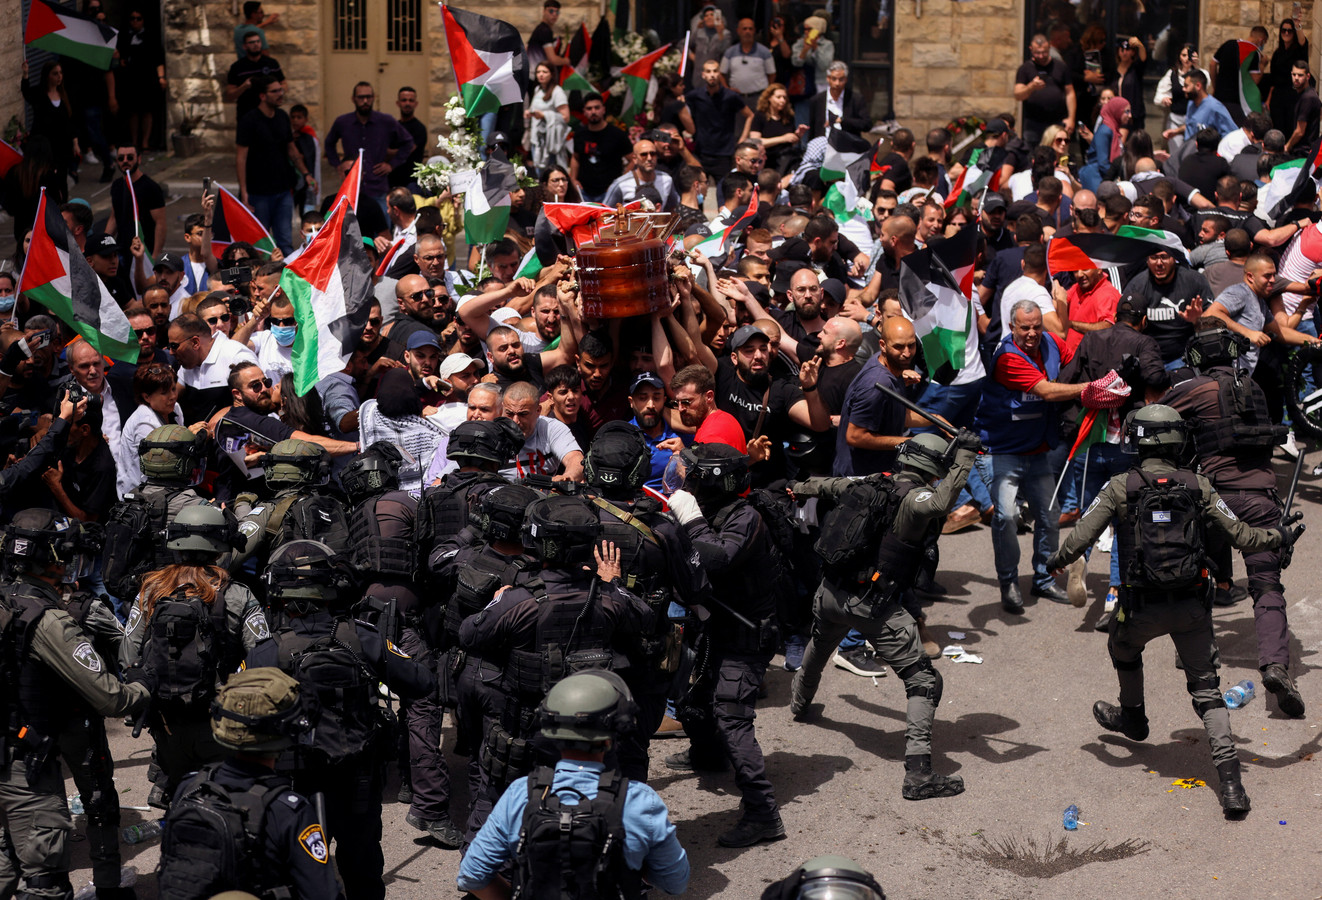 Des images montrent le cercueil de la reporter manquer de tomber au sol alors que des policiers israéliens dispersent la foule